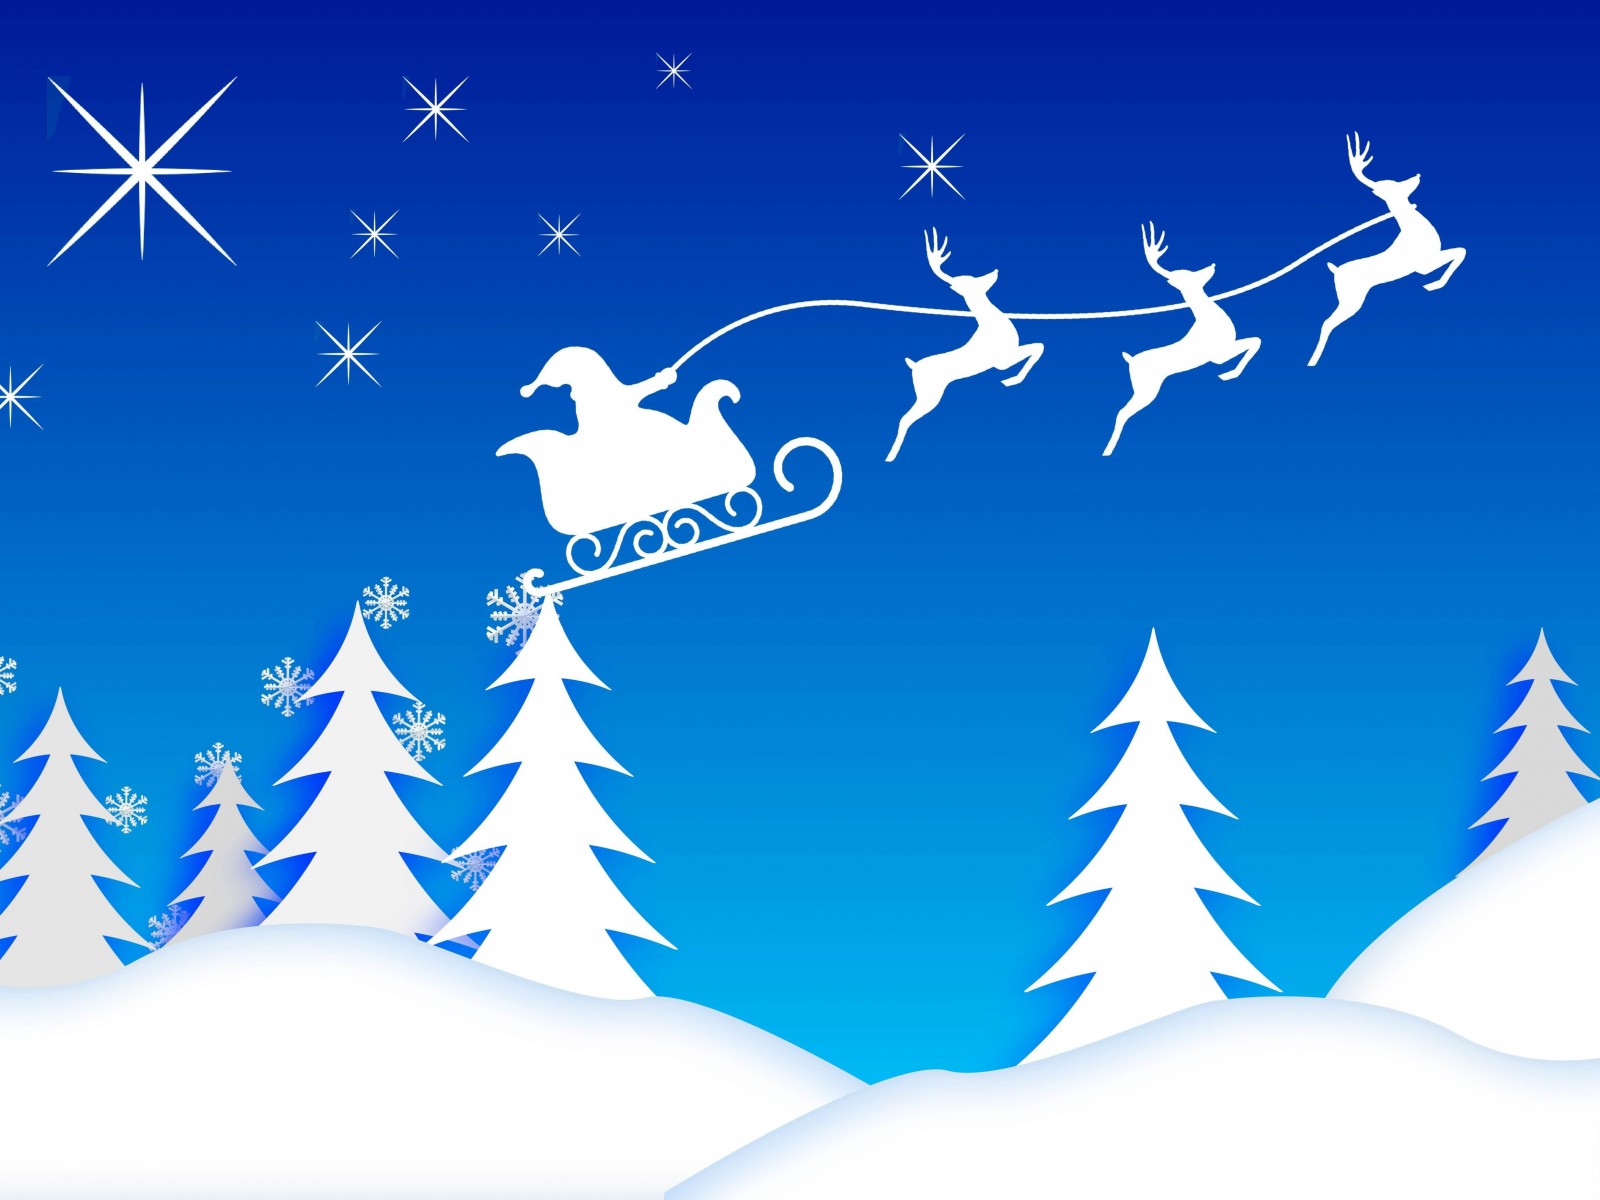 Santa’s Sleigh Illustration Wallpaper for Desktop 1600x1200